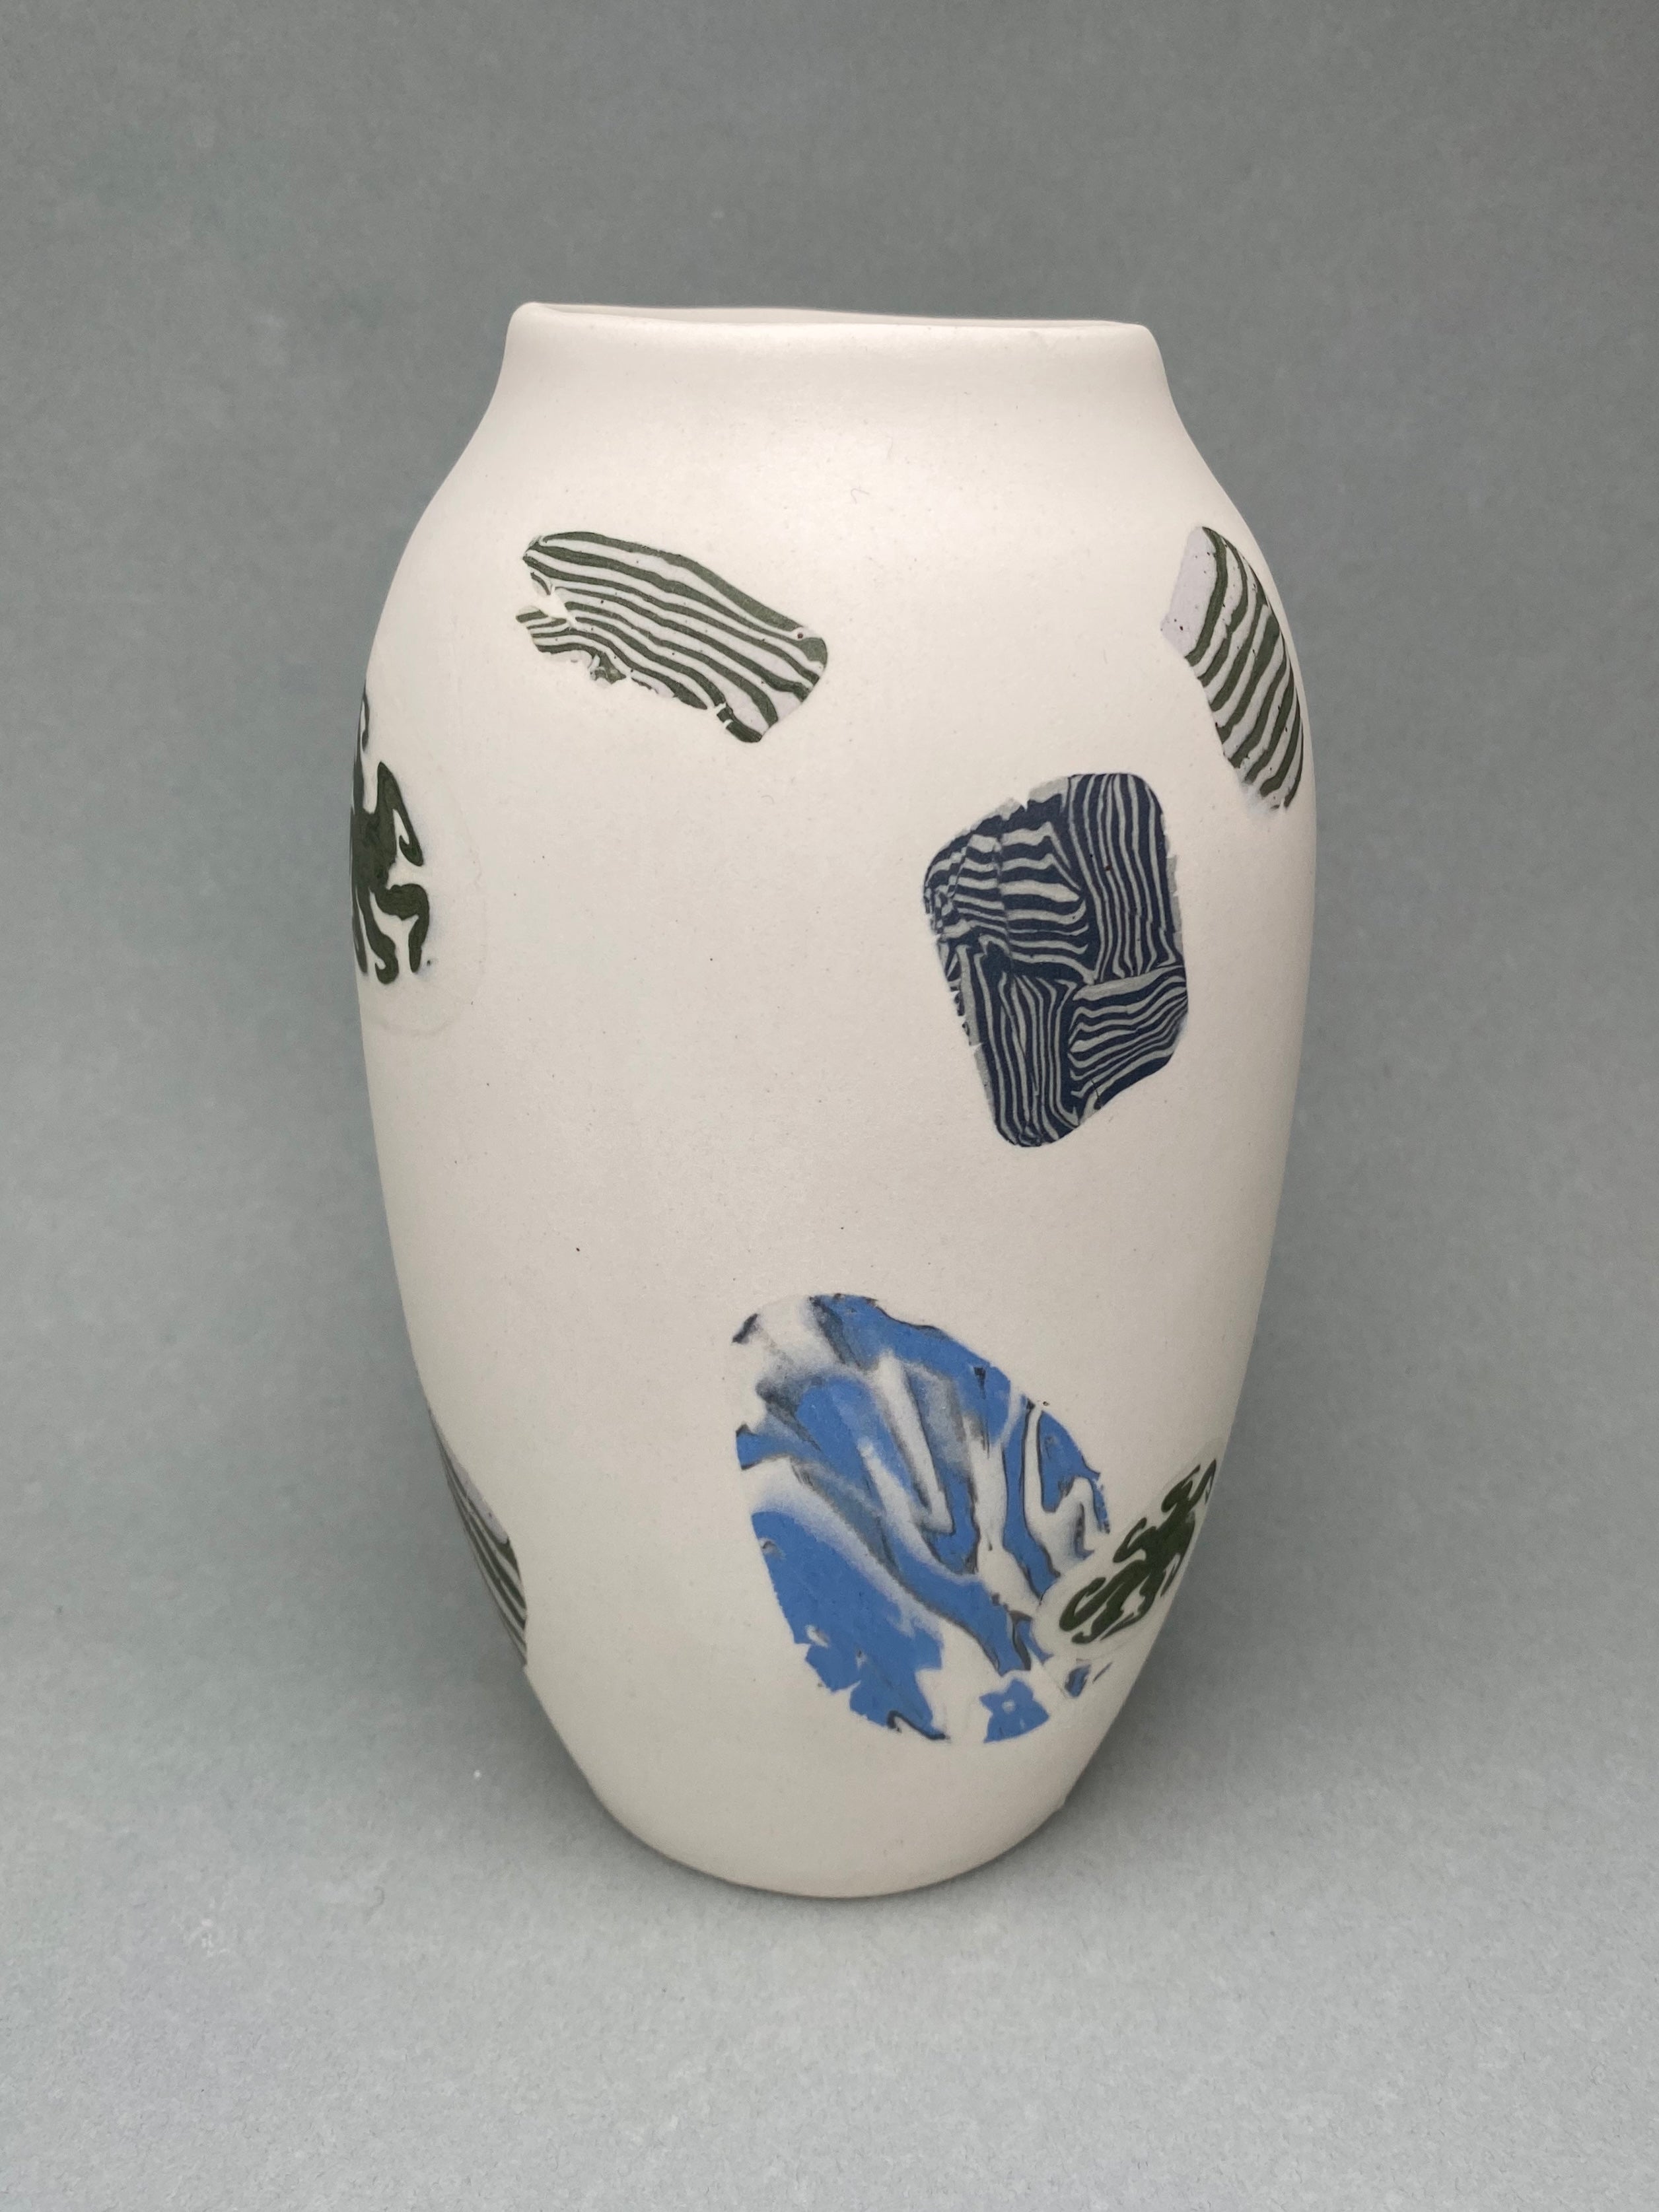 Flurry Vase by Avara Studio